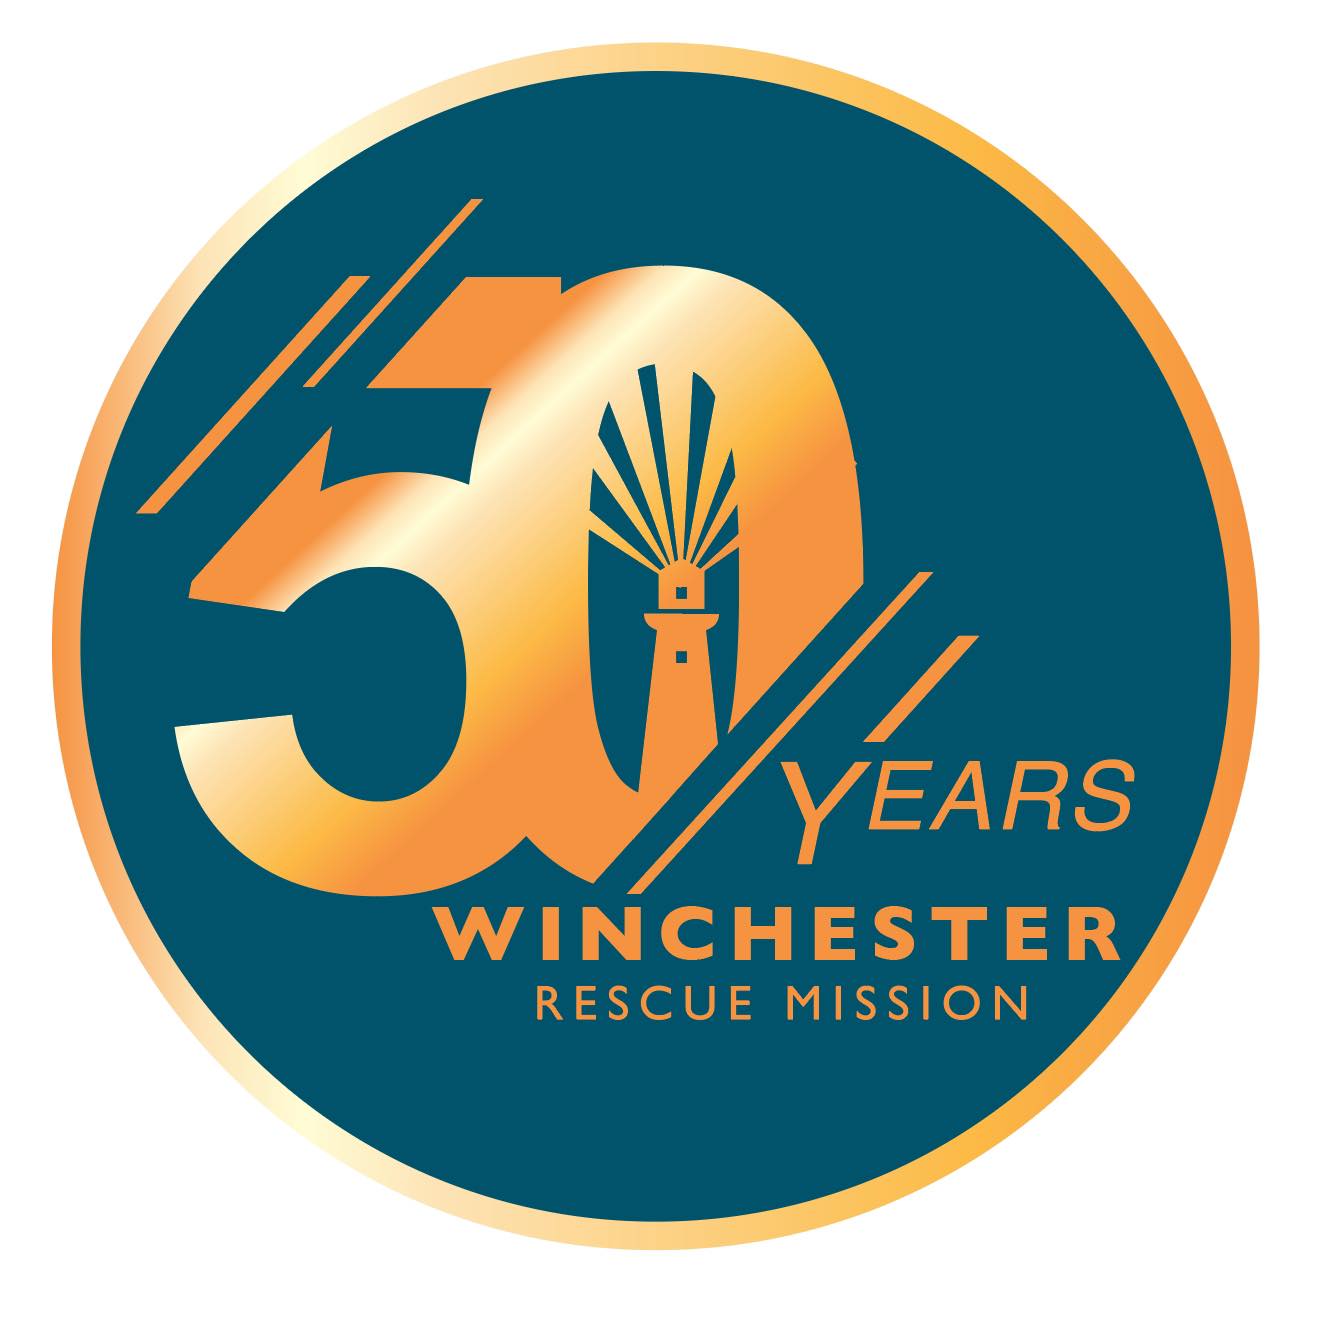 Winchester Rescue Mission